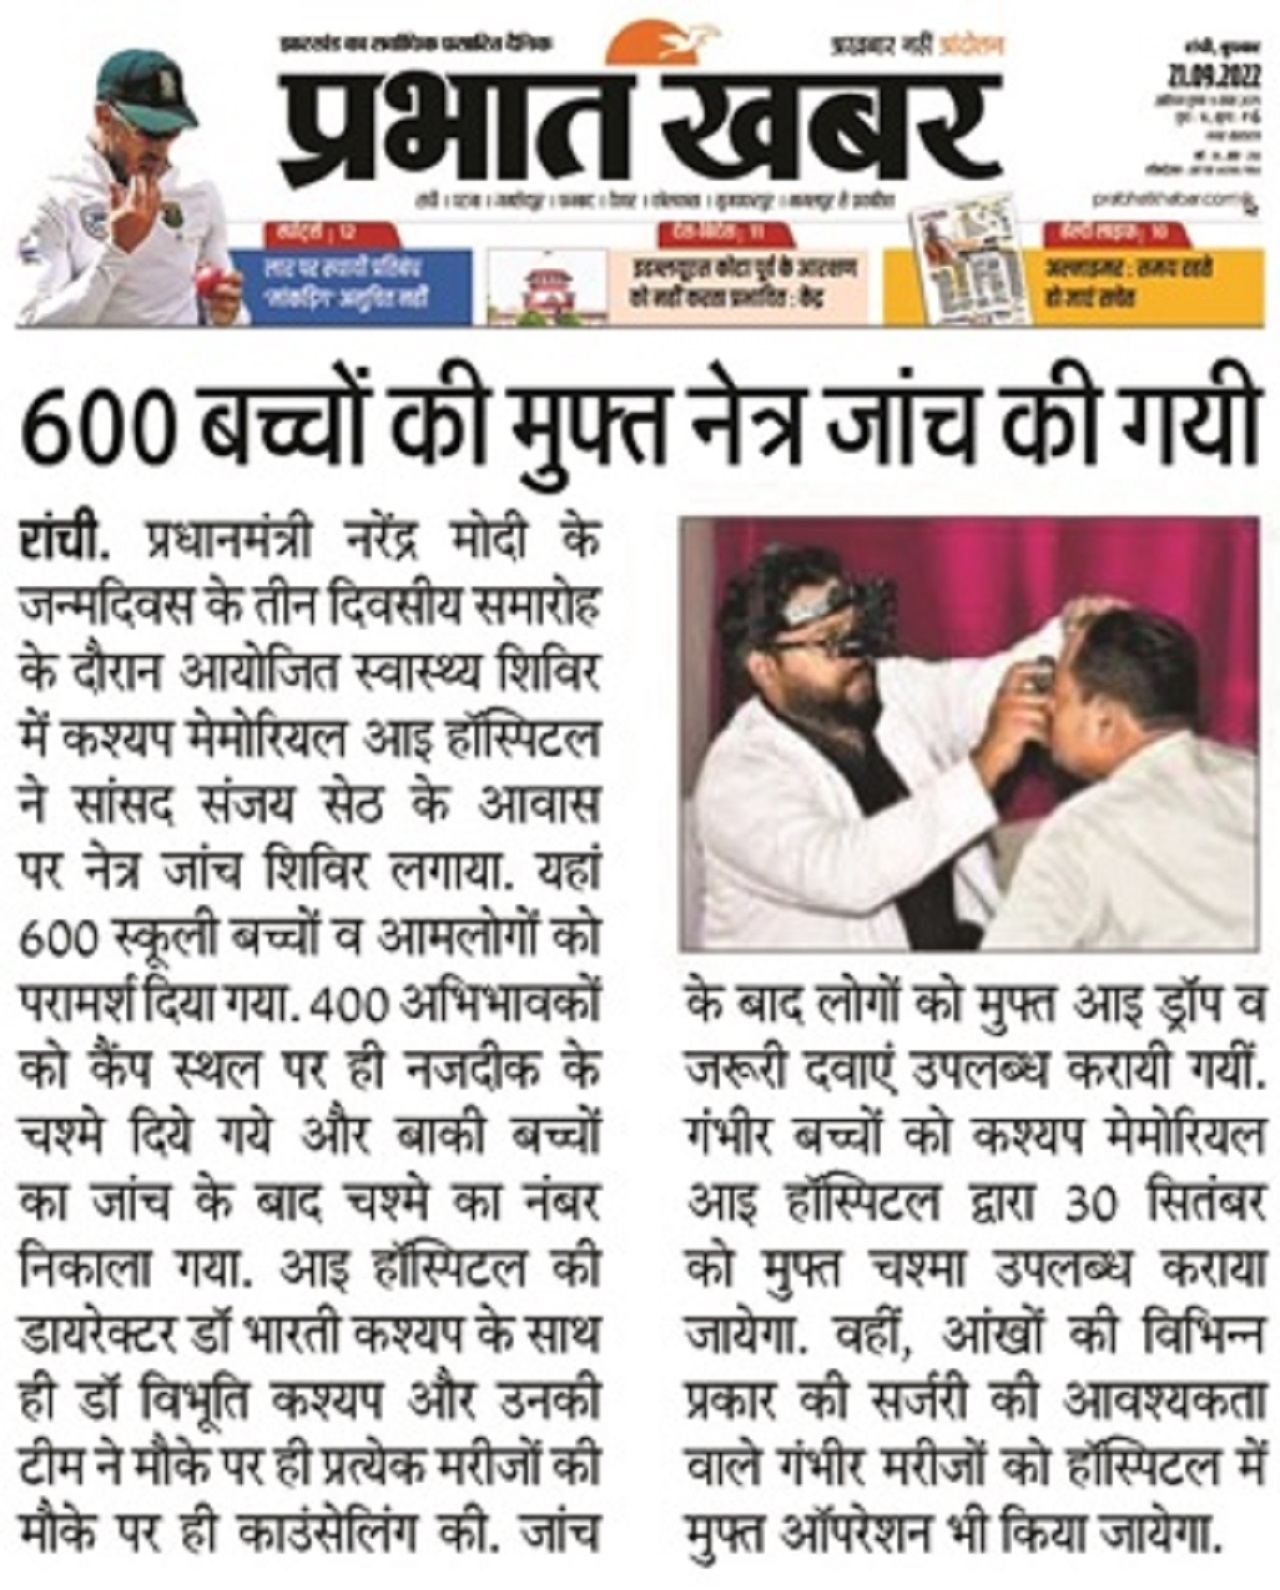 Dr. Bharti Kashyap: Sewa Pakhwara Free Eye Checkup and Cataract Surgery Camp at Pandra, Ranchi